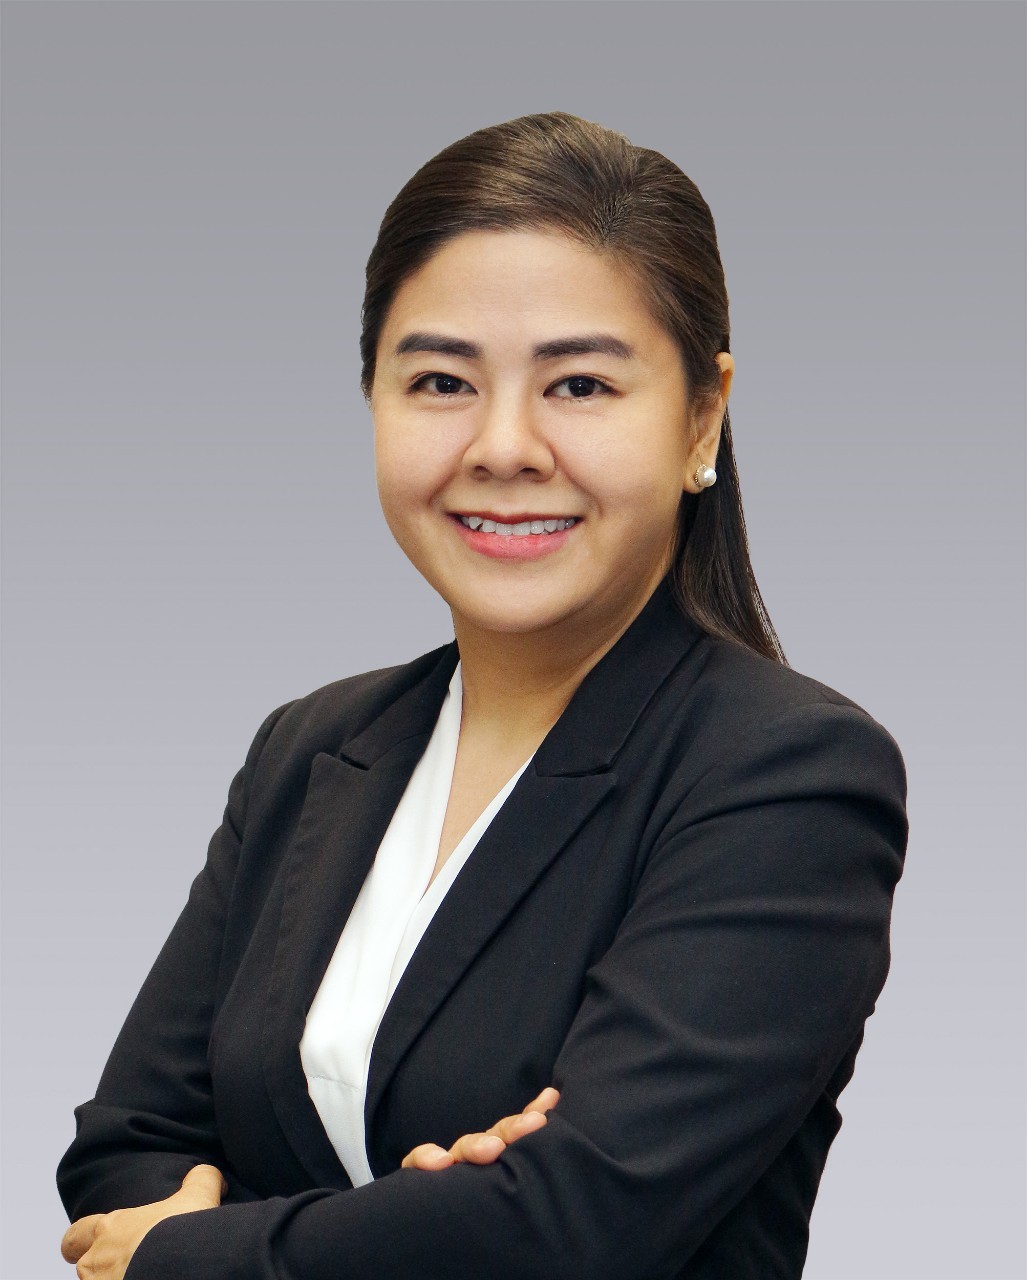 
Bà Đỗ Thị Xuân Trang – Trưởng phòng Dịch vụ Bán lẻ, Colliers (Việt Nam)
